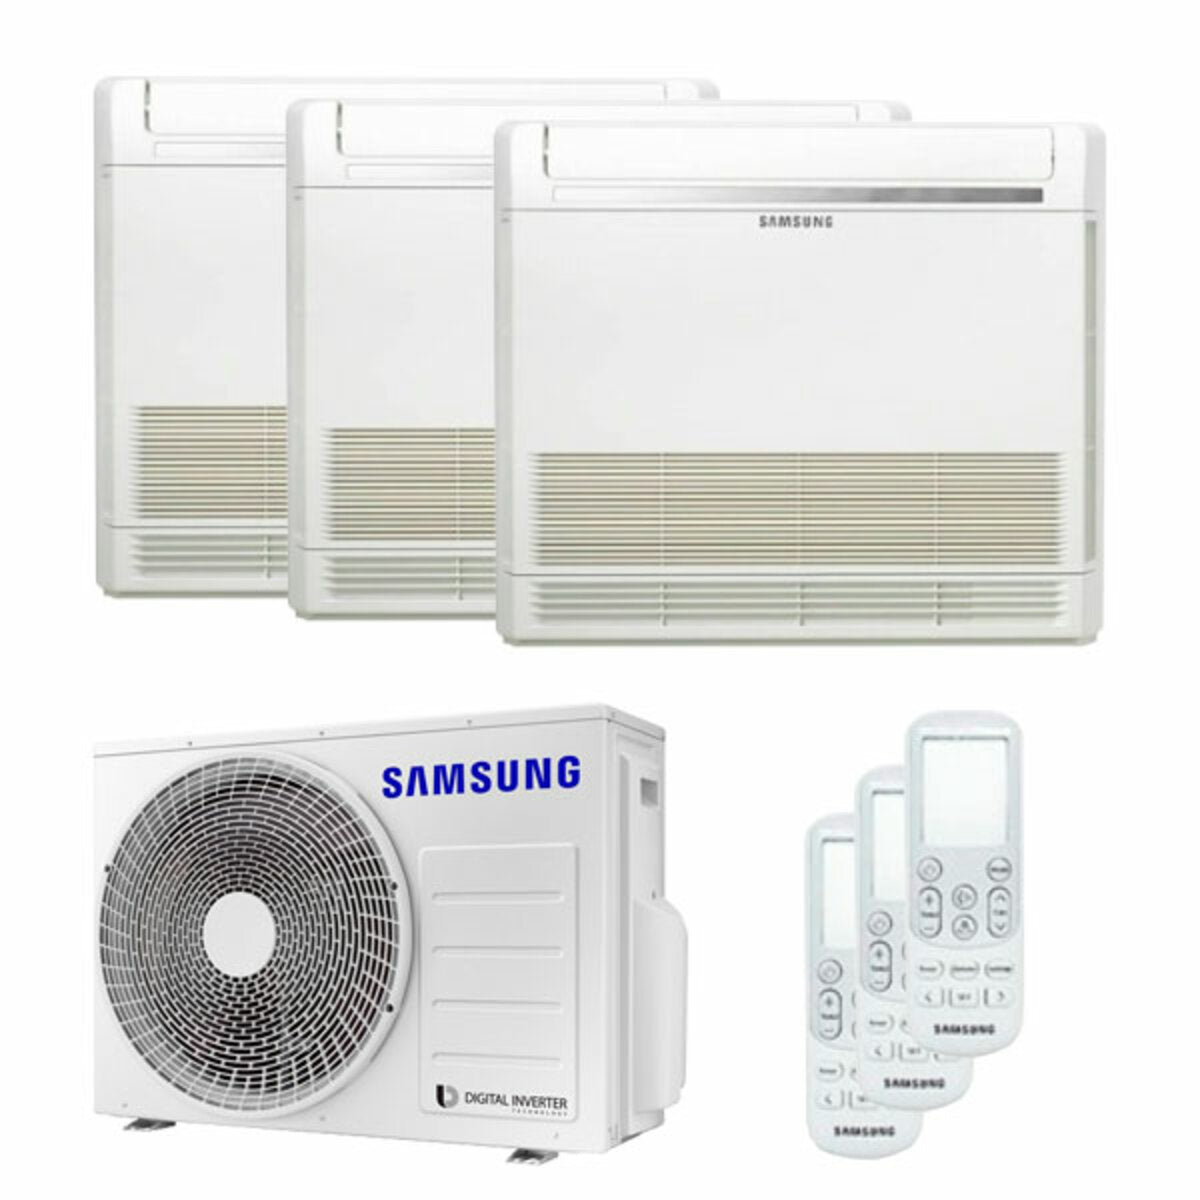 Samsung Klimakonsole Trial Split 9000 + 9000 + 9000 BTU Inverter A+++ Außengerät 5,2 kW